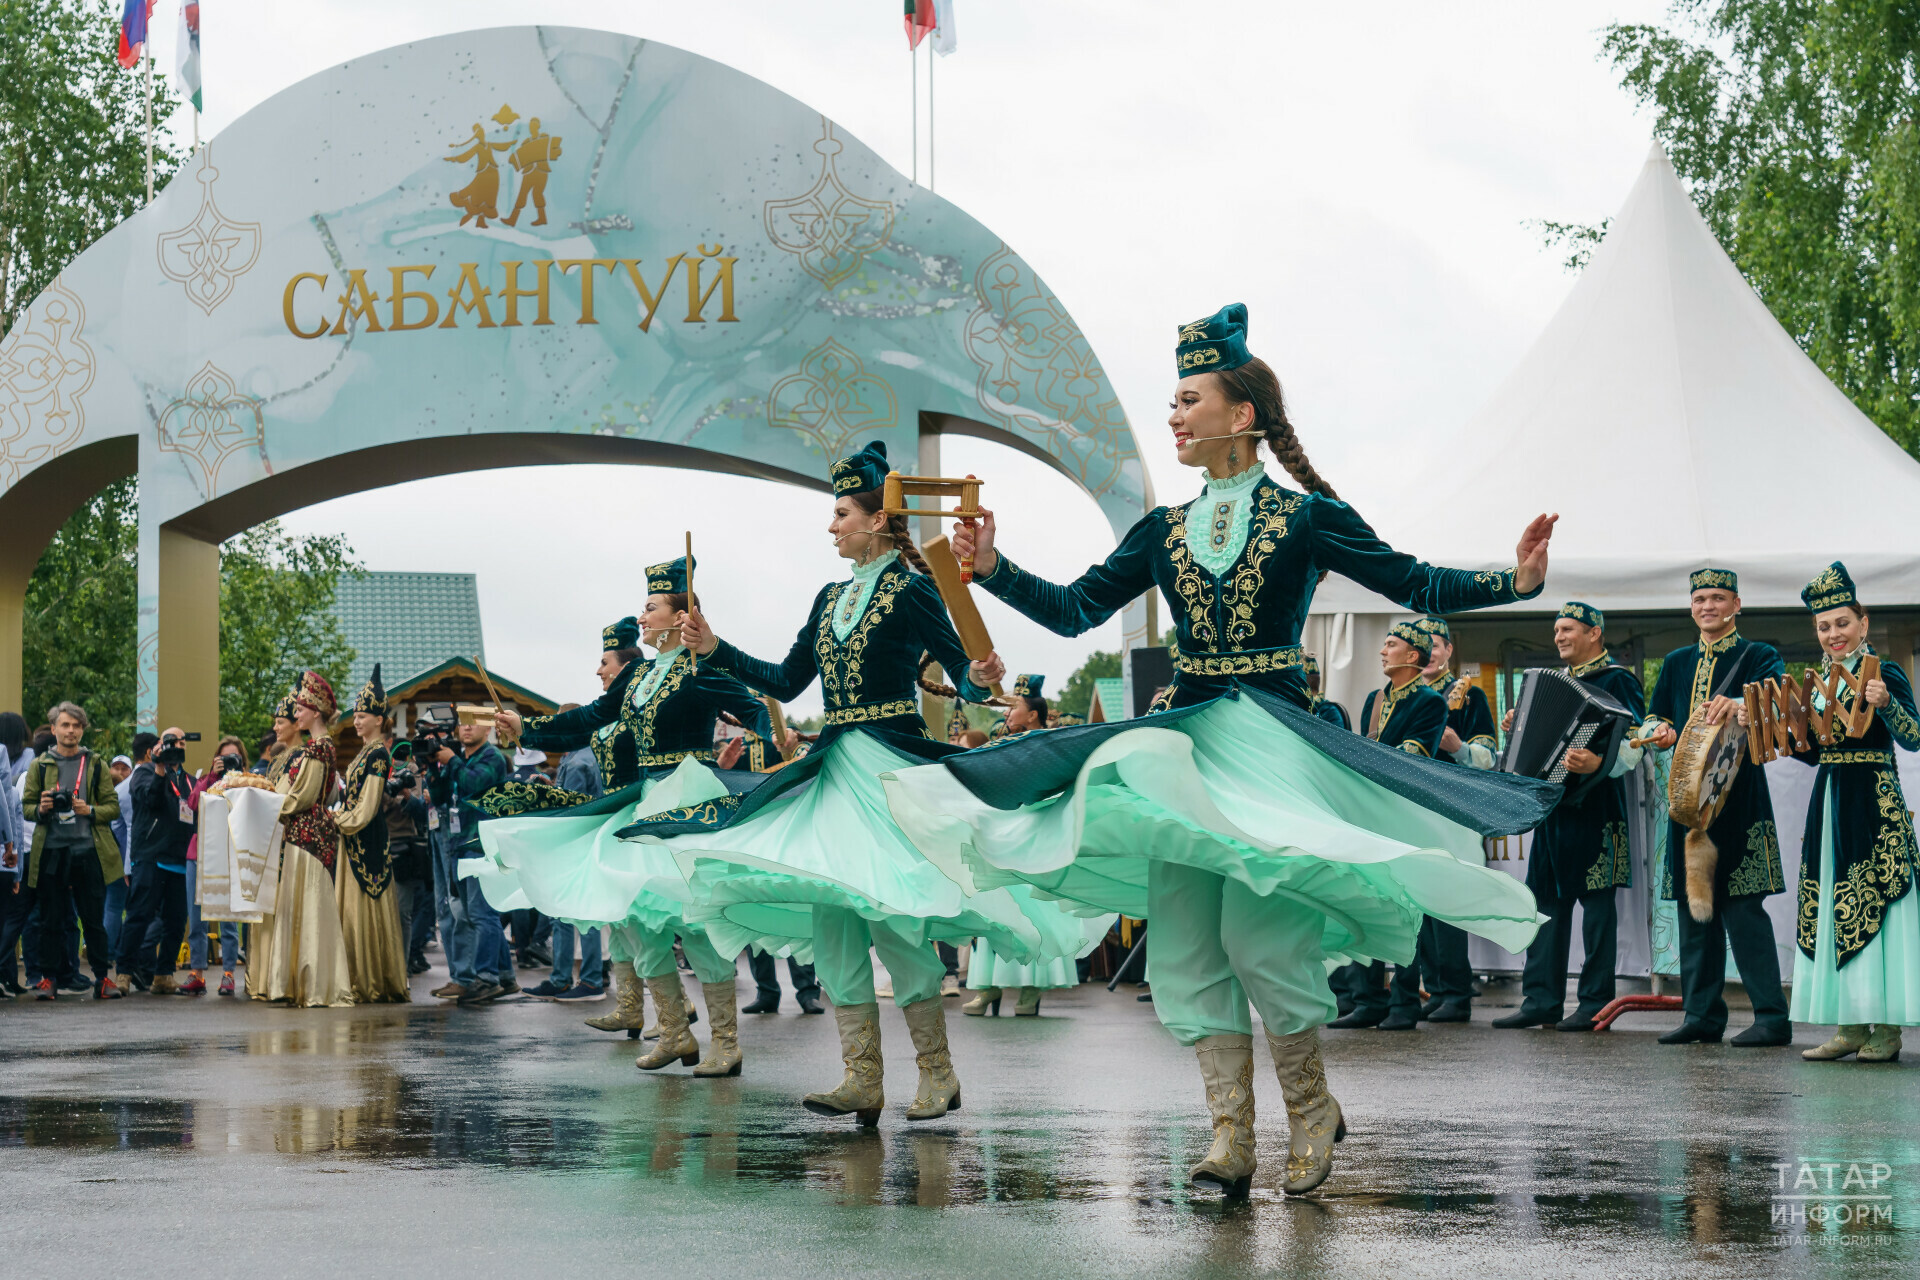 «Напомнило мне наш бразильский карнавал»: как Сабантуй в Казани объединил почти весь мир